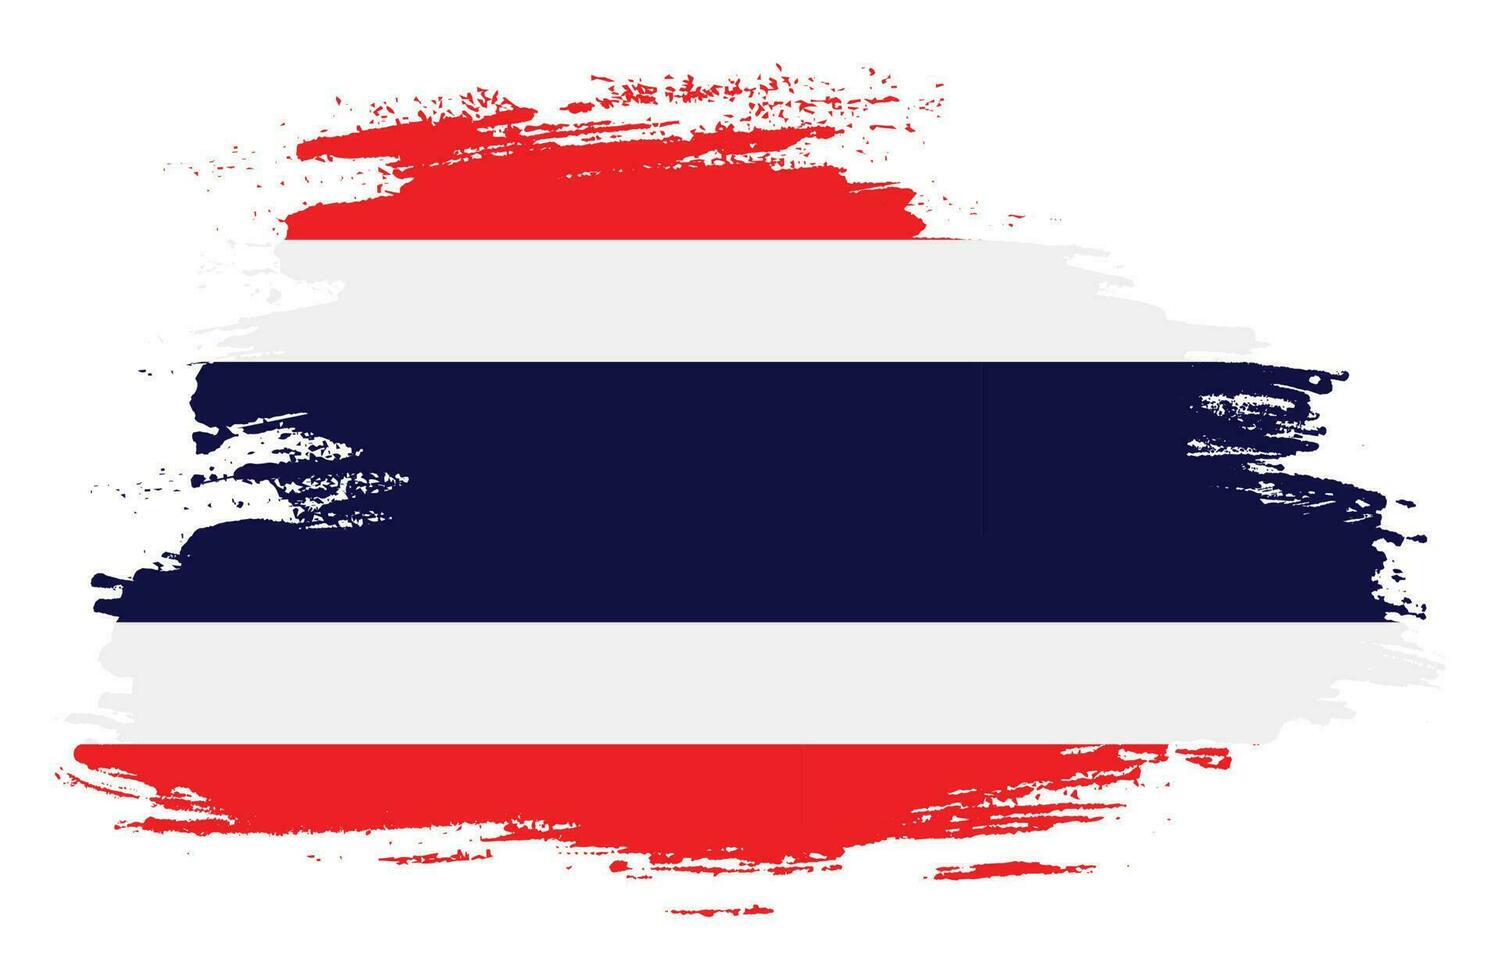 Modern brush stroke Thailand flag vector